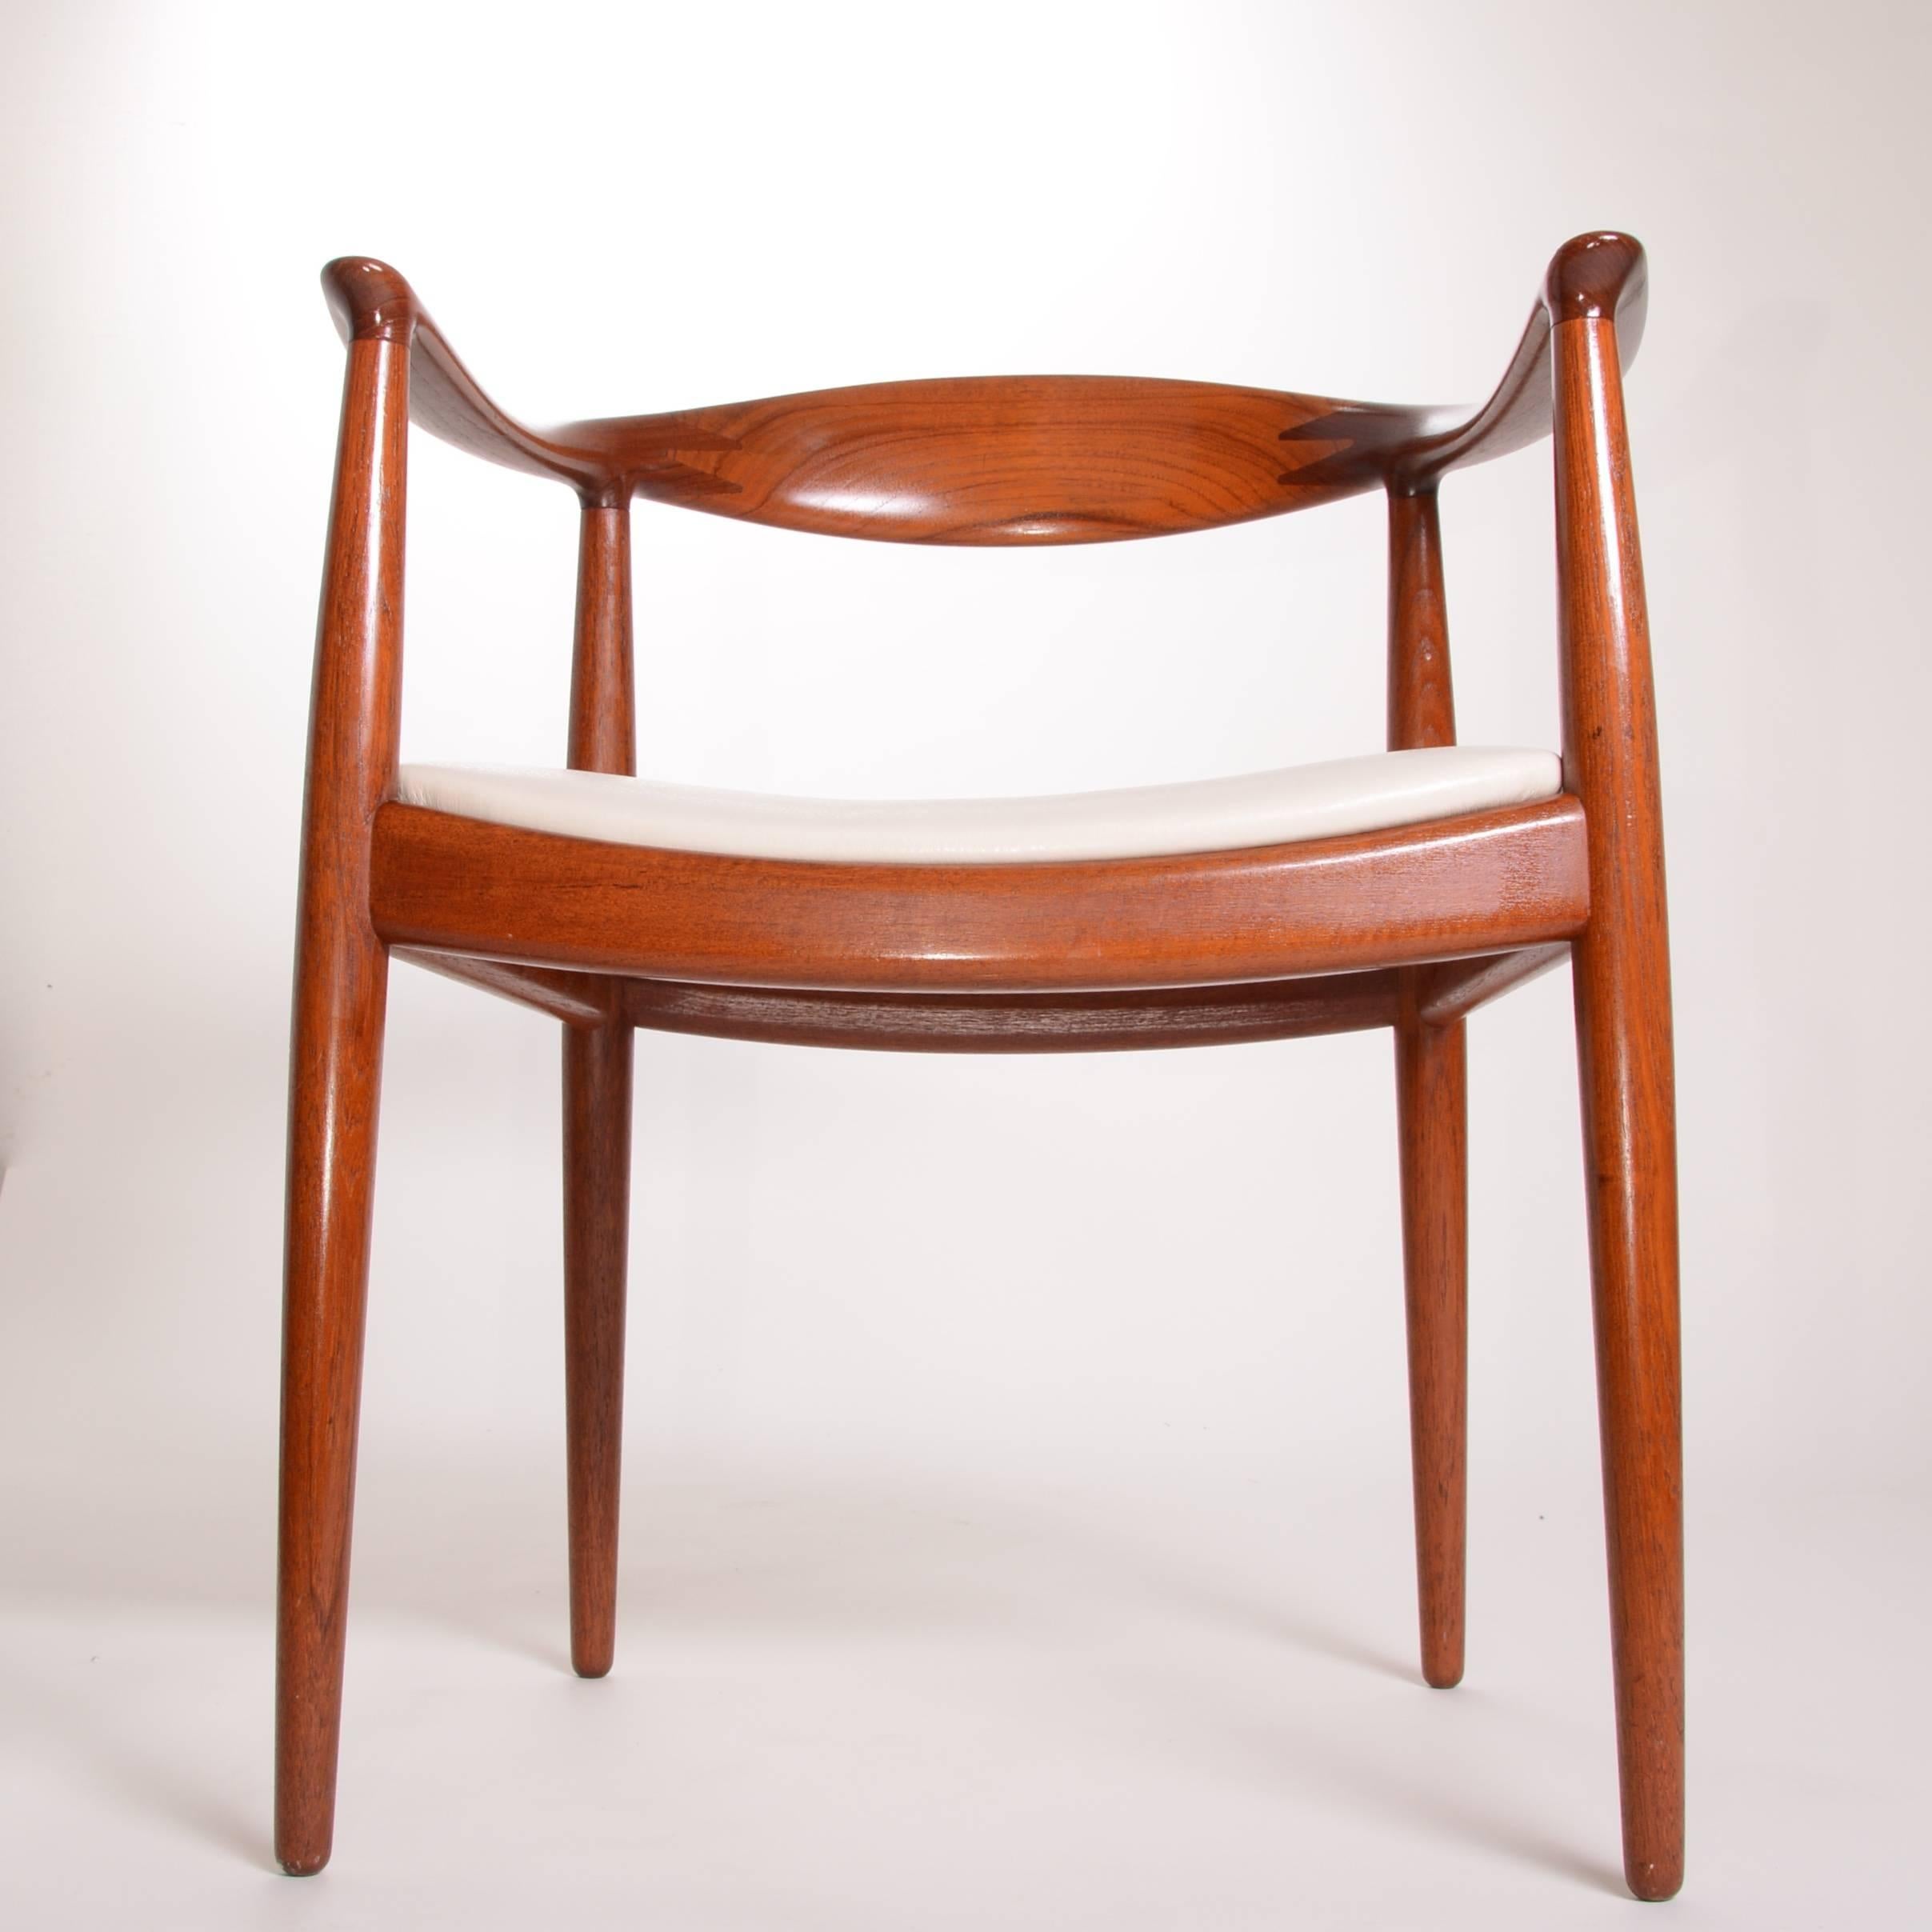 4 Early Hans Wegner for Johannes Hansen JH-503 Chairs in Teak For Sale 7